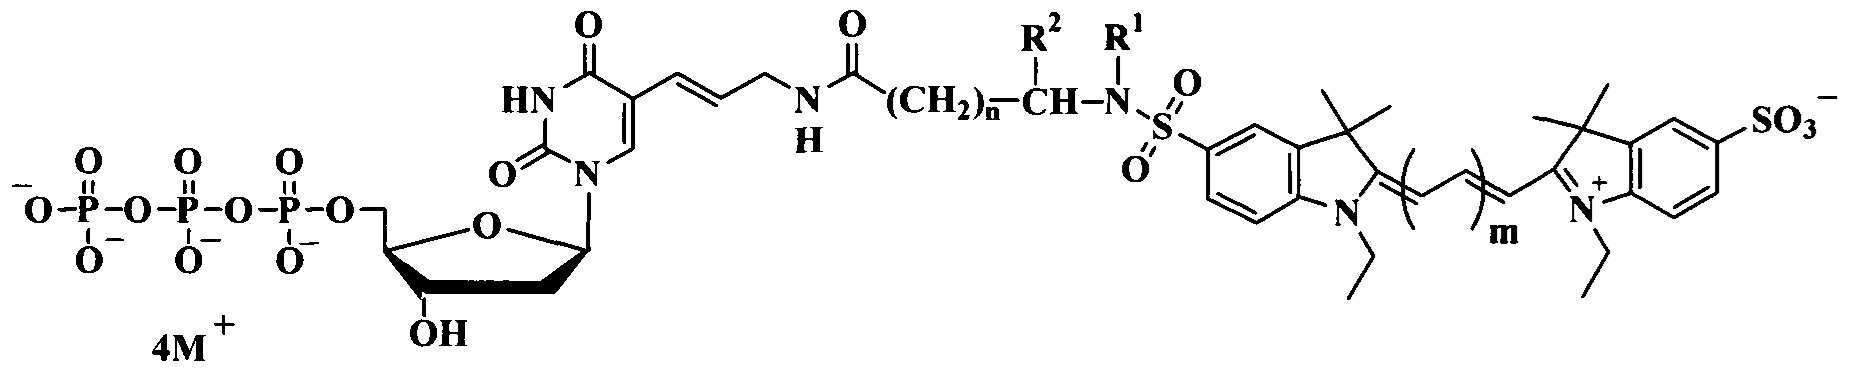 Дезоксиуридинтрифосфаты, связанные с цианиновыми красителями сульфамидоалкильными линкерами, для использования в ПЦР